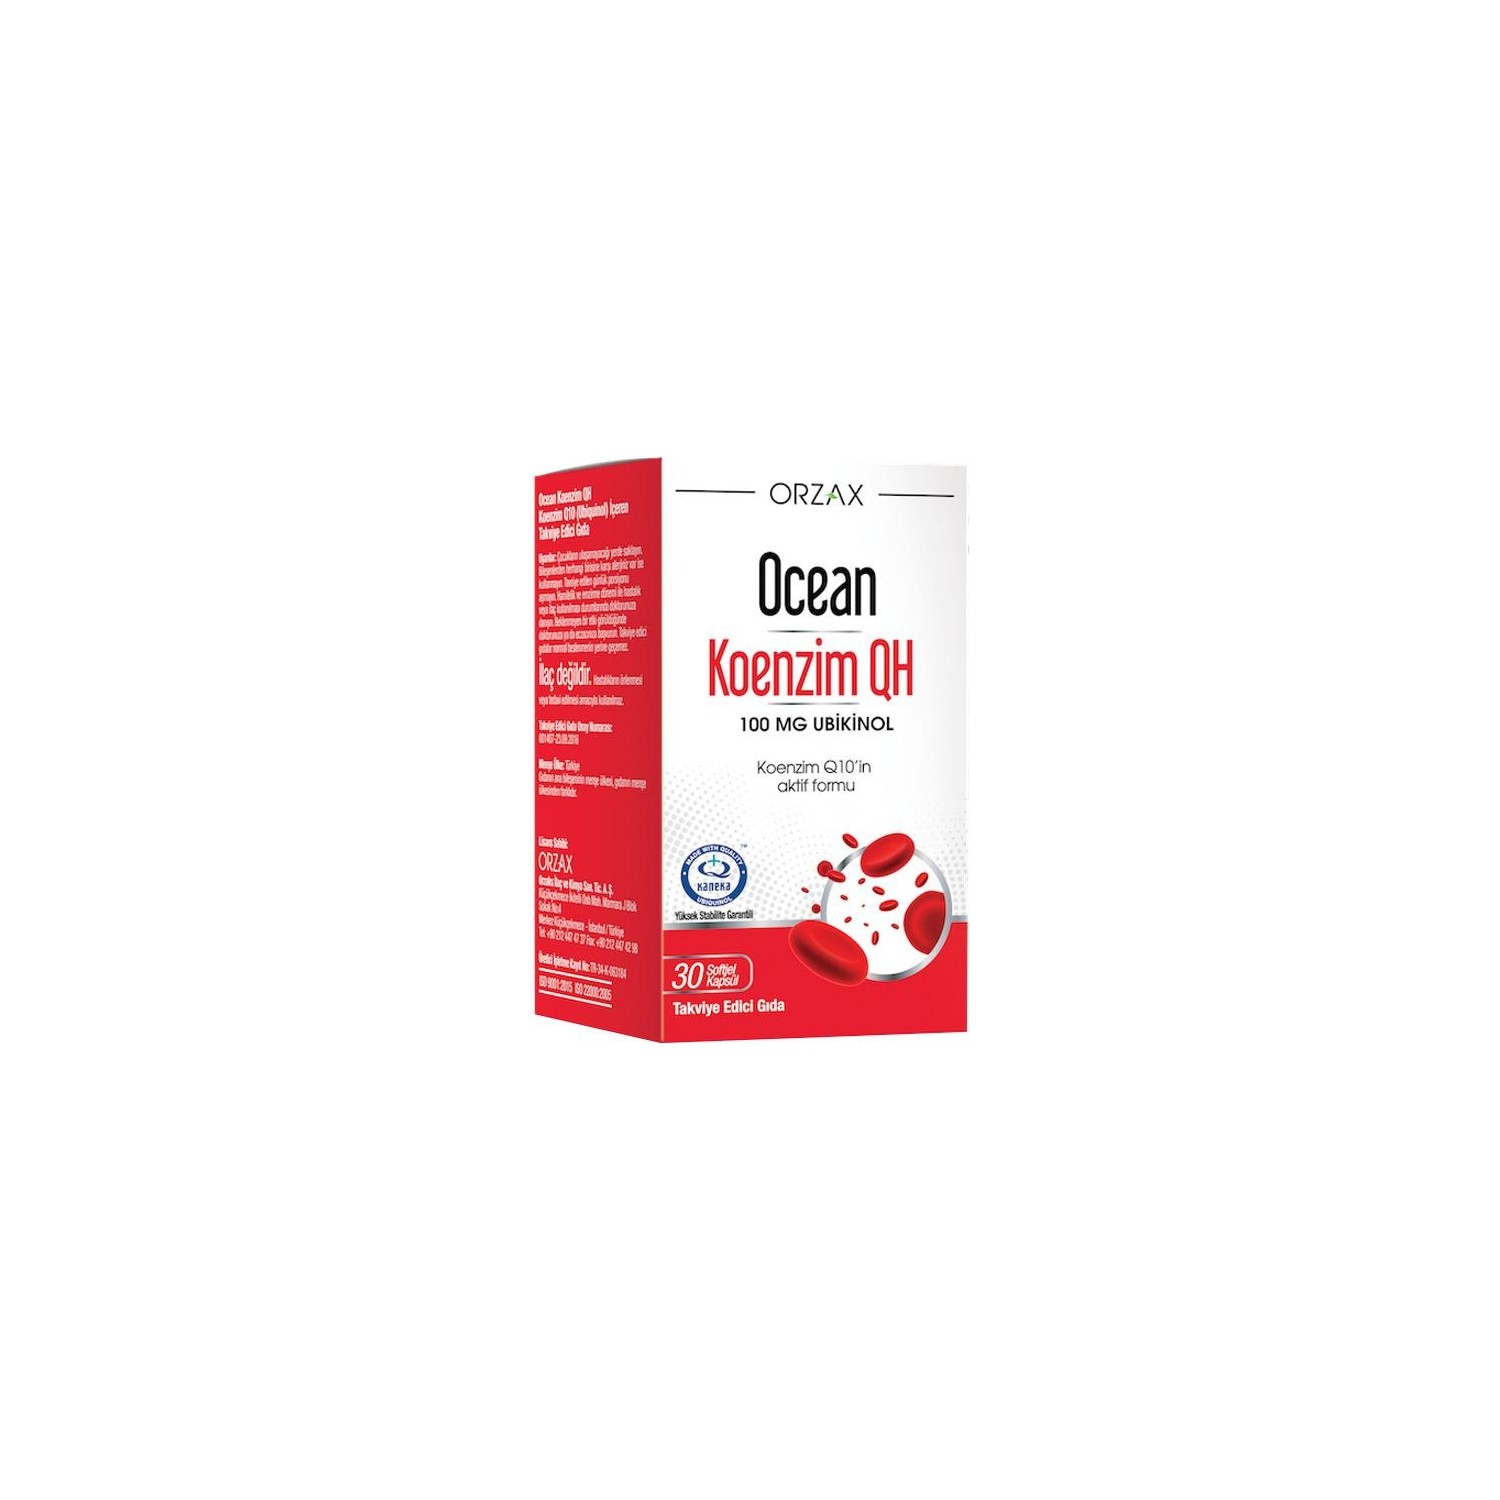 Коэнзим Qh Orzax 100 мг, 30 капсул reserveage nutrition активный убихинол коэнзим q10 с ресвератролом 60 капсул с жидкостью